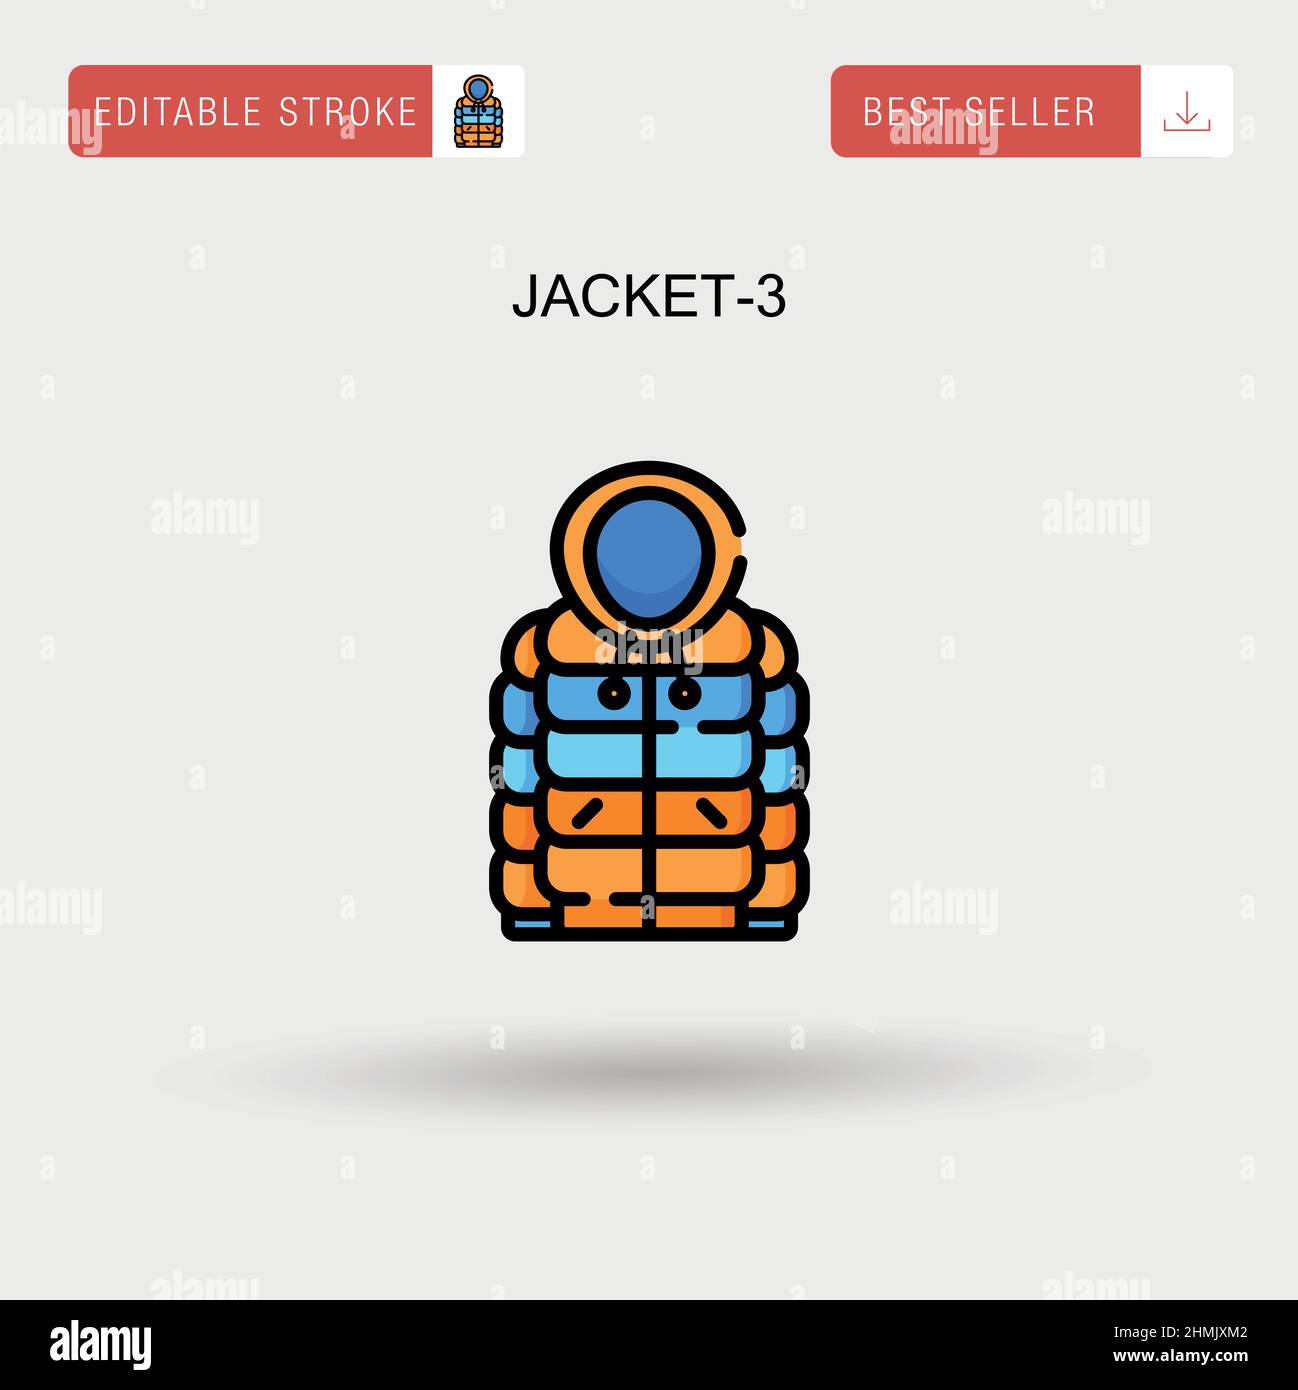 Jacket-3 einfaches Vektorsymbol. Stock Vektor